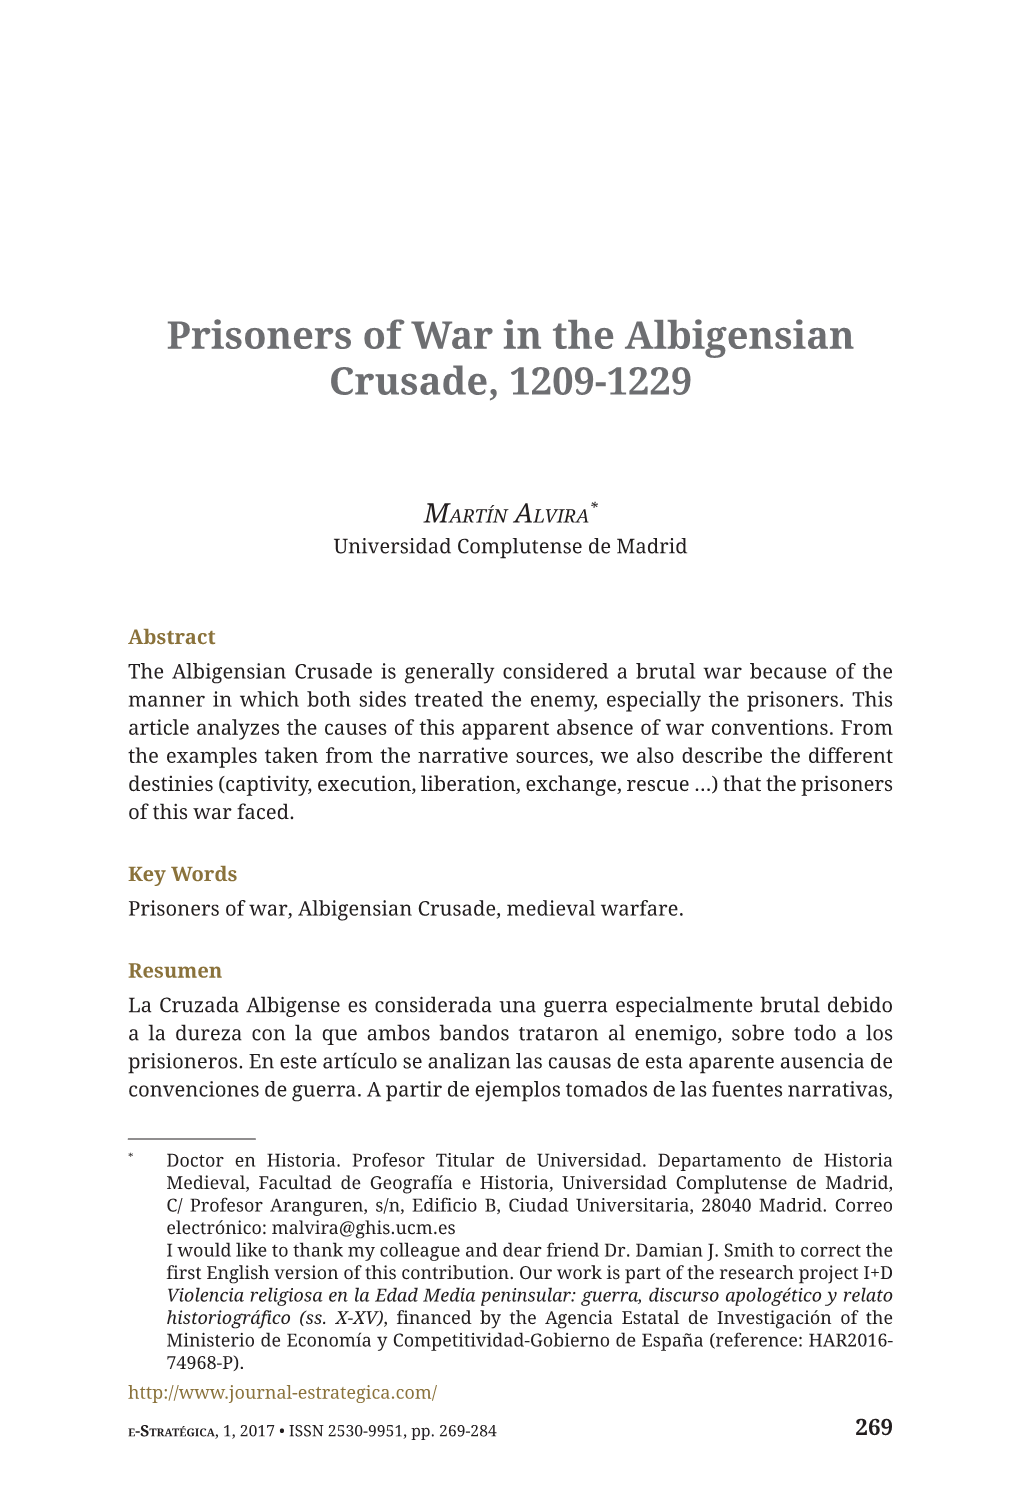 Prisoners of War in the Albigensian Crusade, 1209-1229